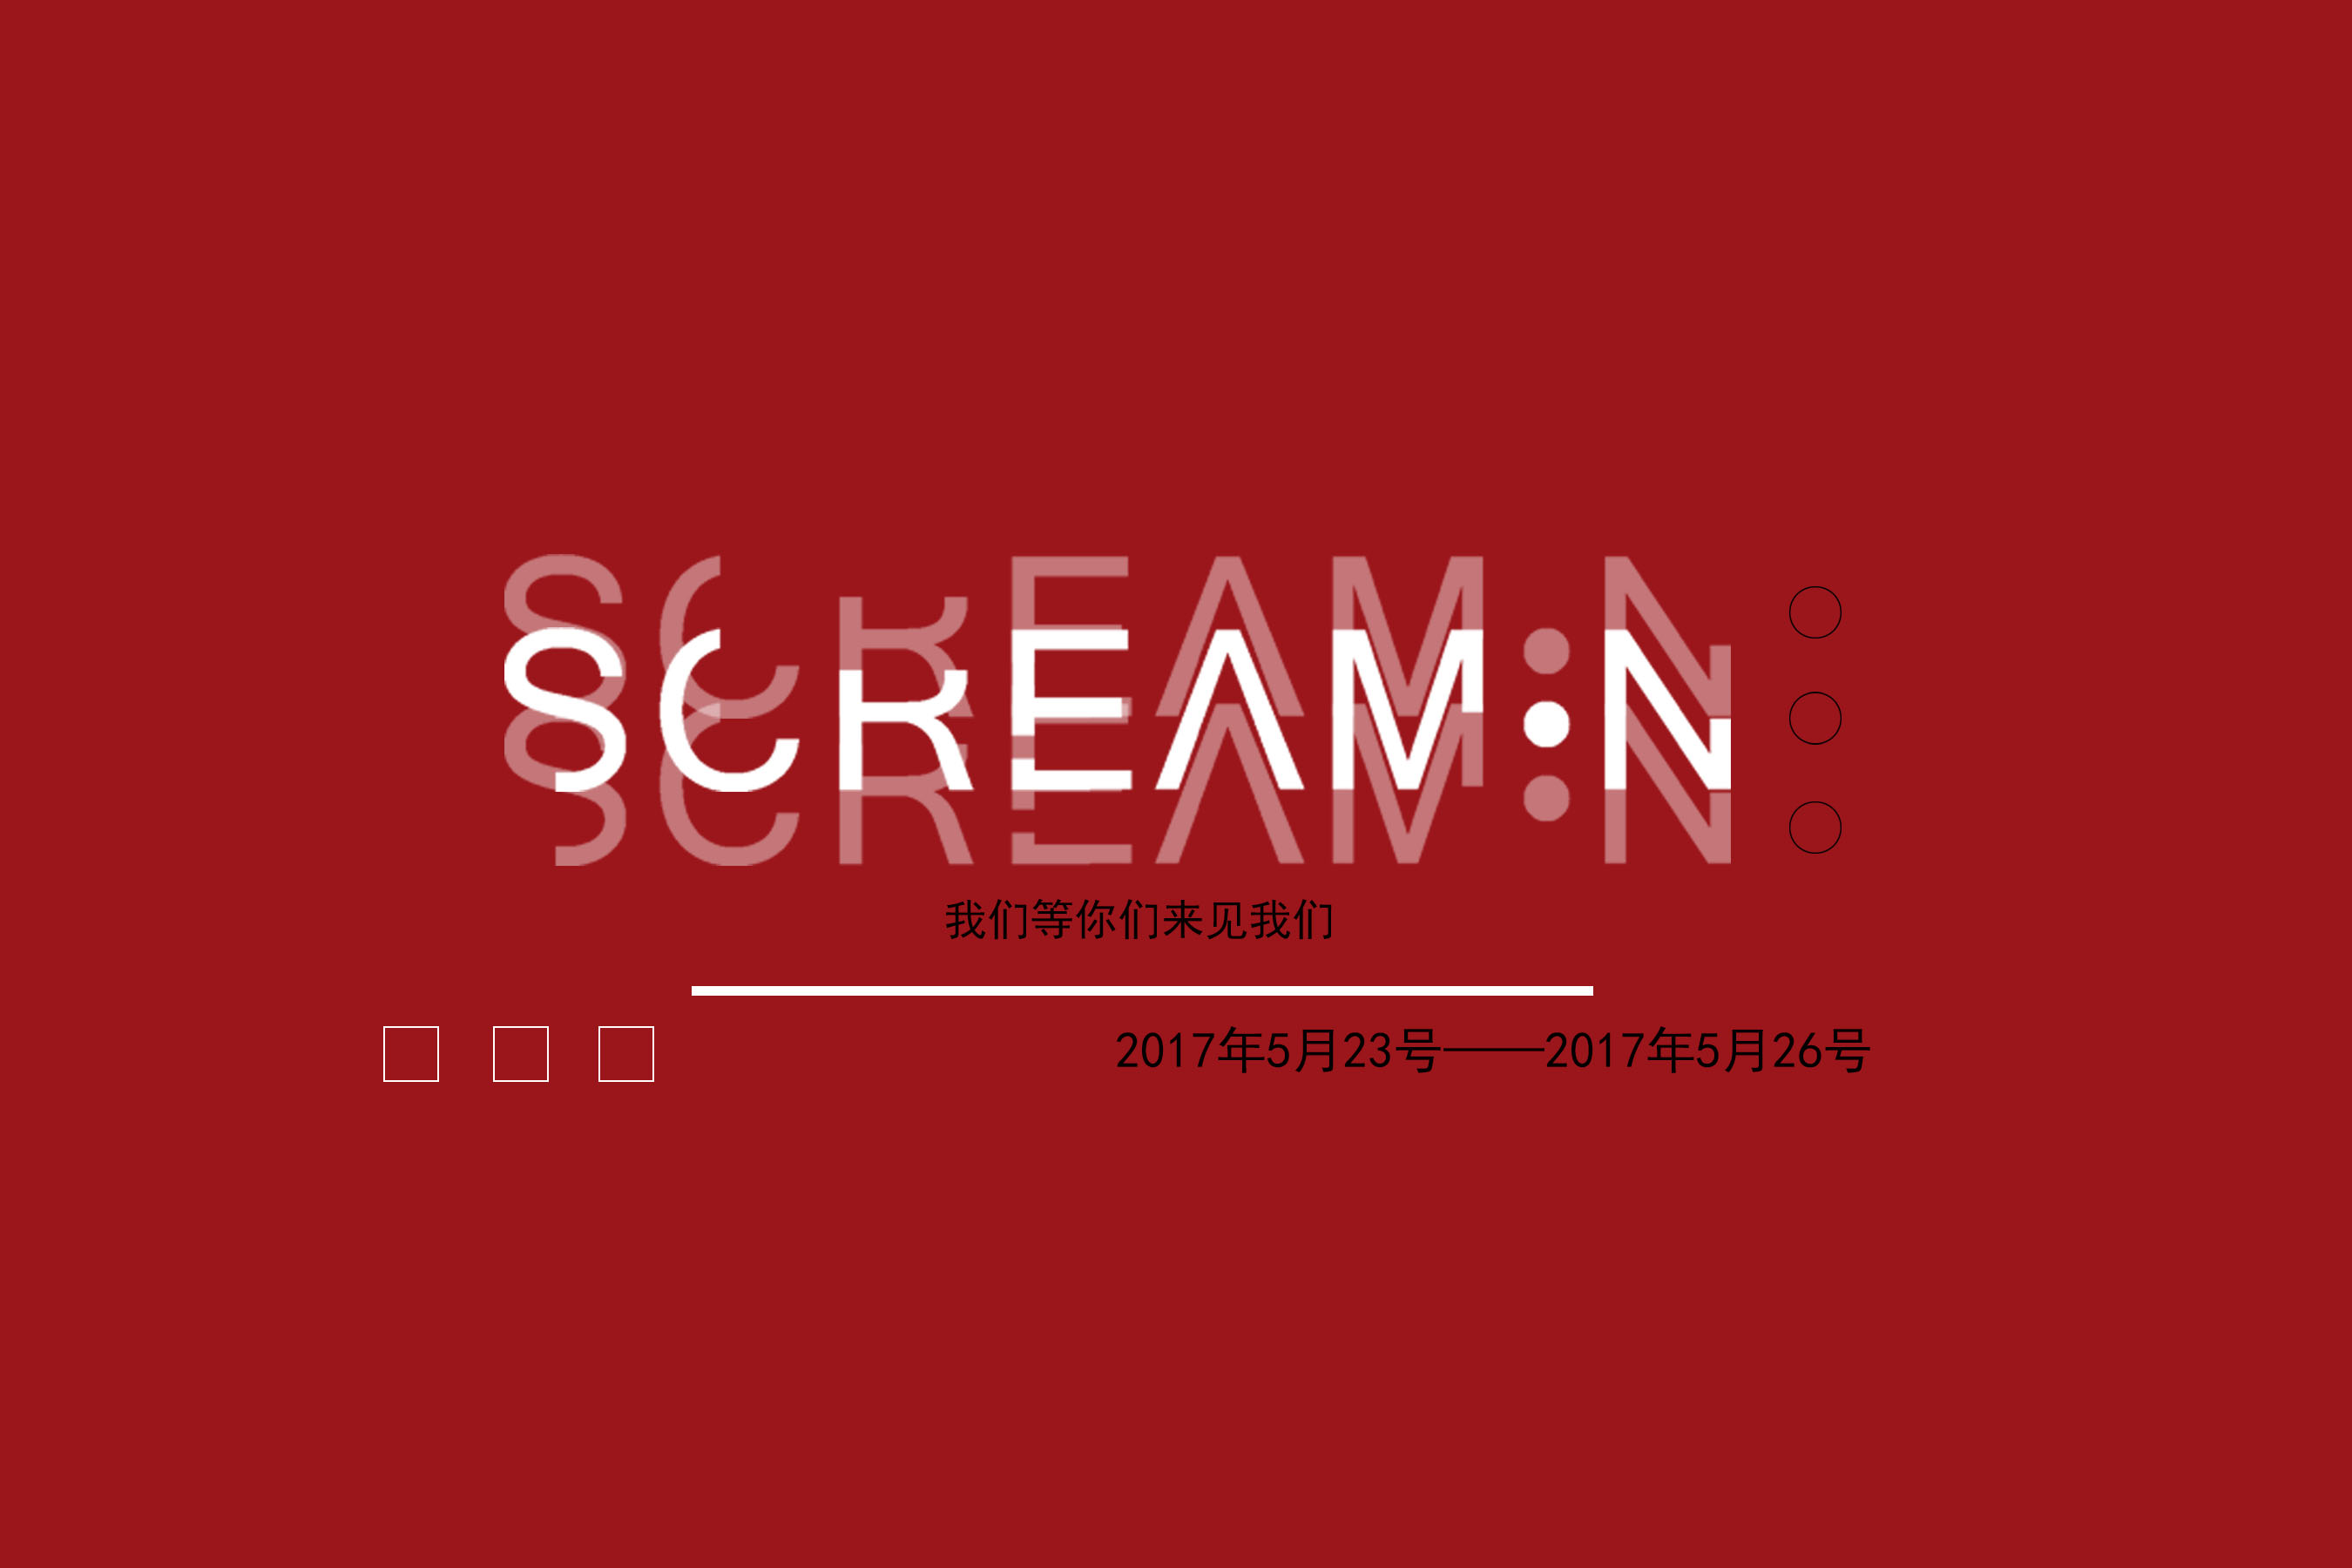 scream.n